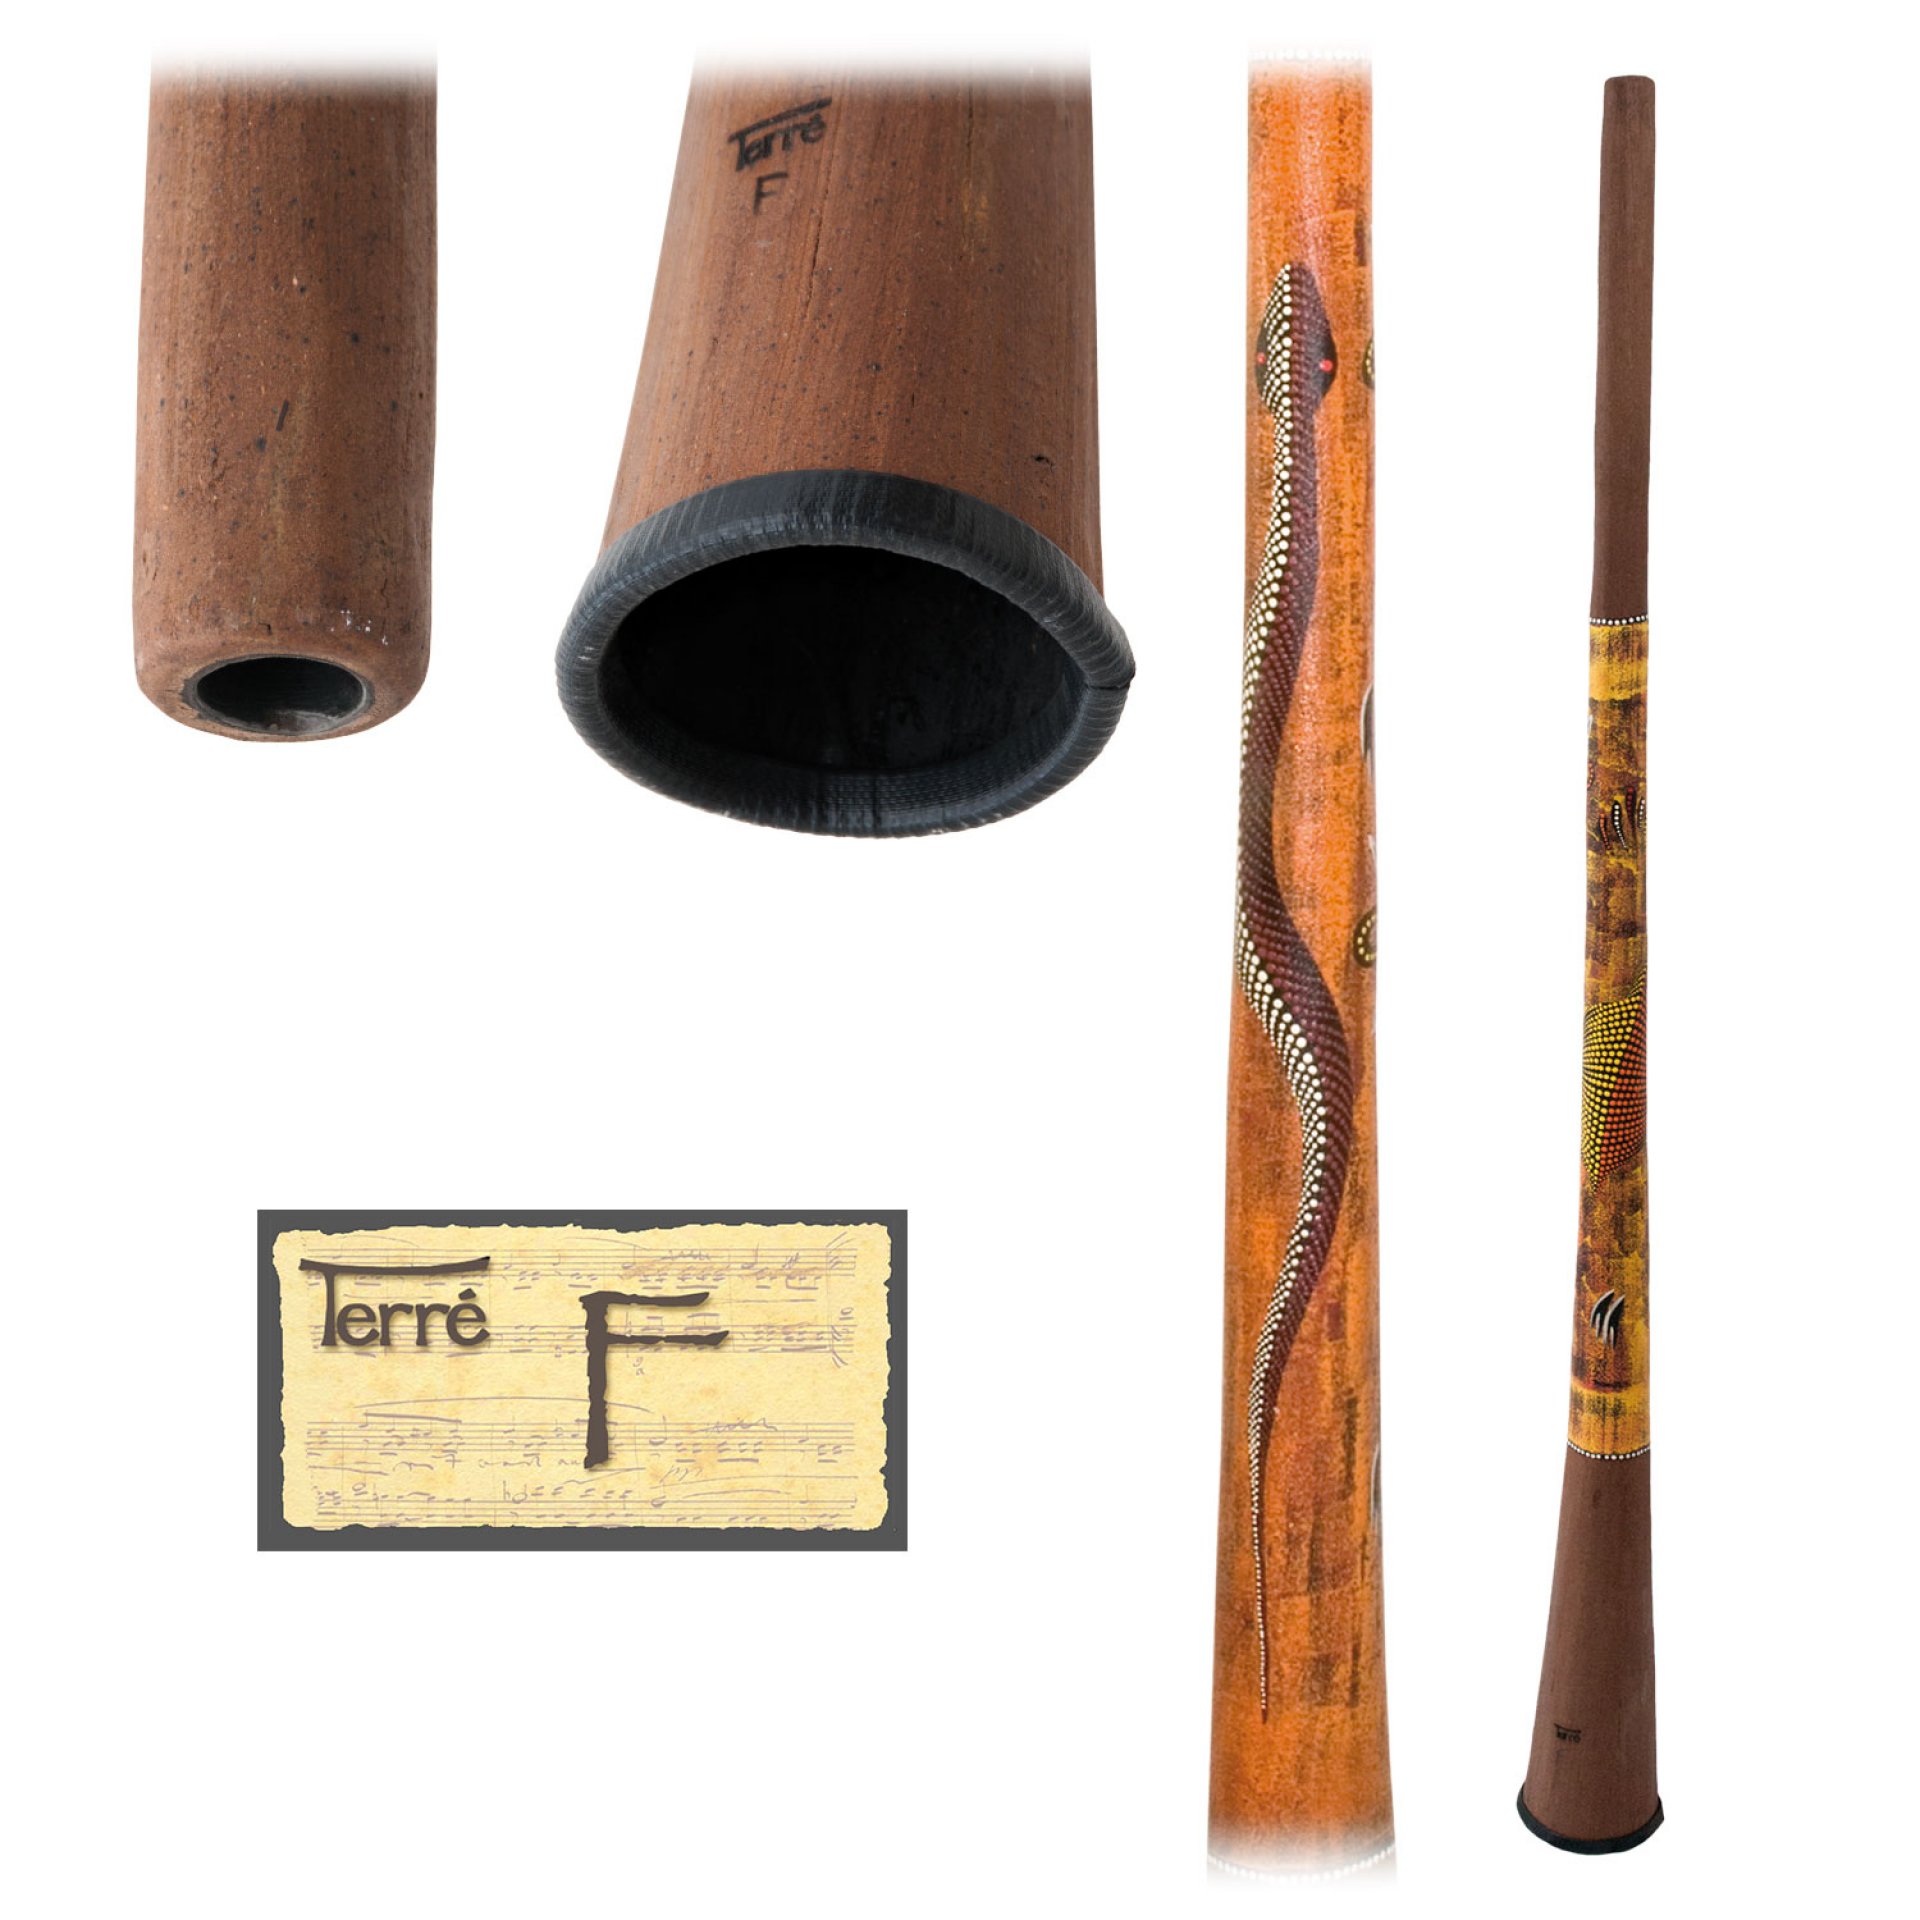 Baked wood Didgeridoo F